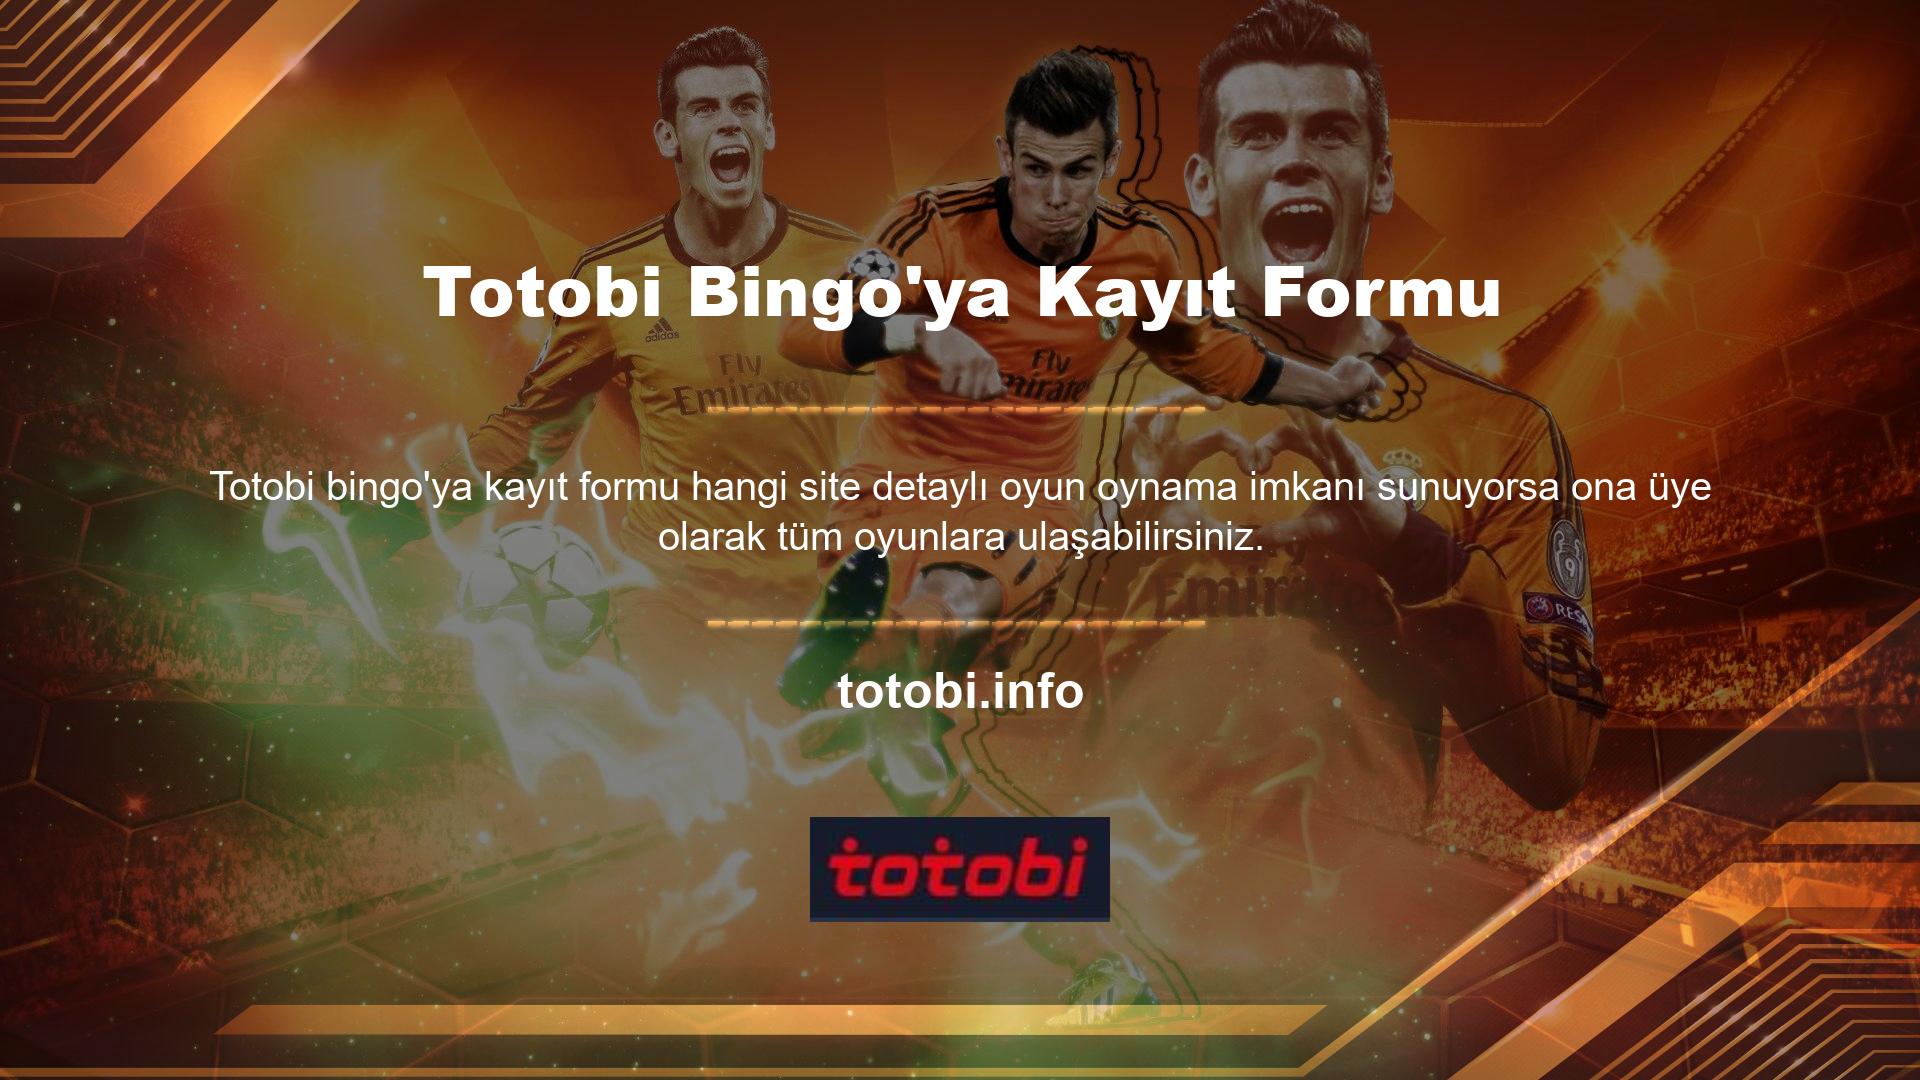 Diğer bir başlık ise popüler oyunlardan geniş bir oyun yelpazesi sunan Totobi bingo'nun kayıt ana sayfasını açmak için kullanılıyor